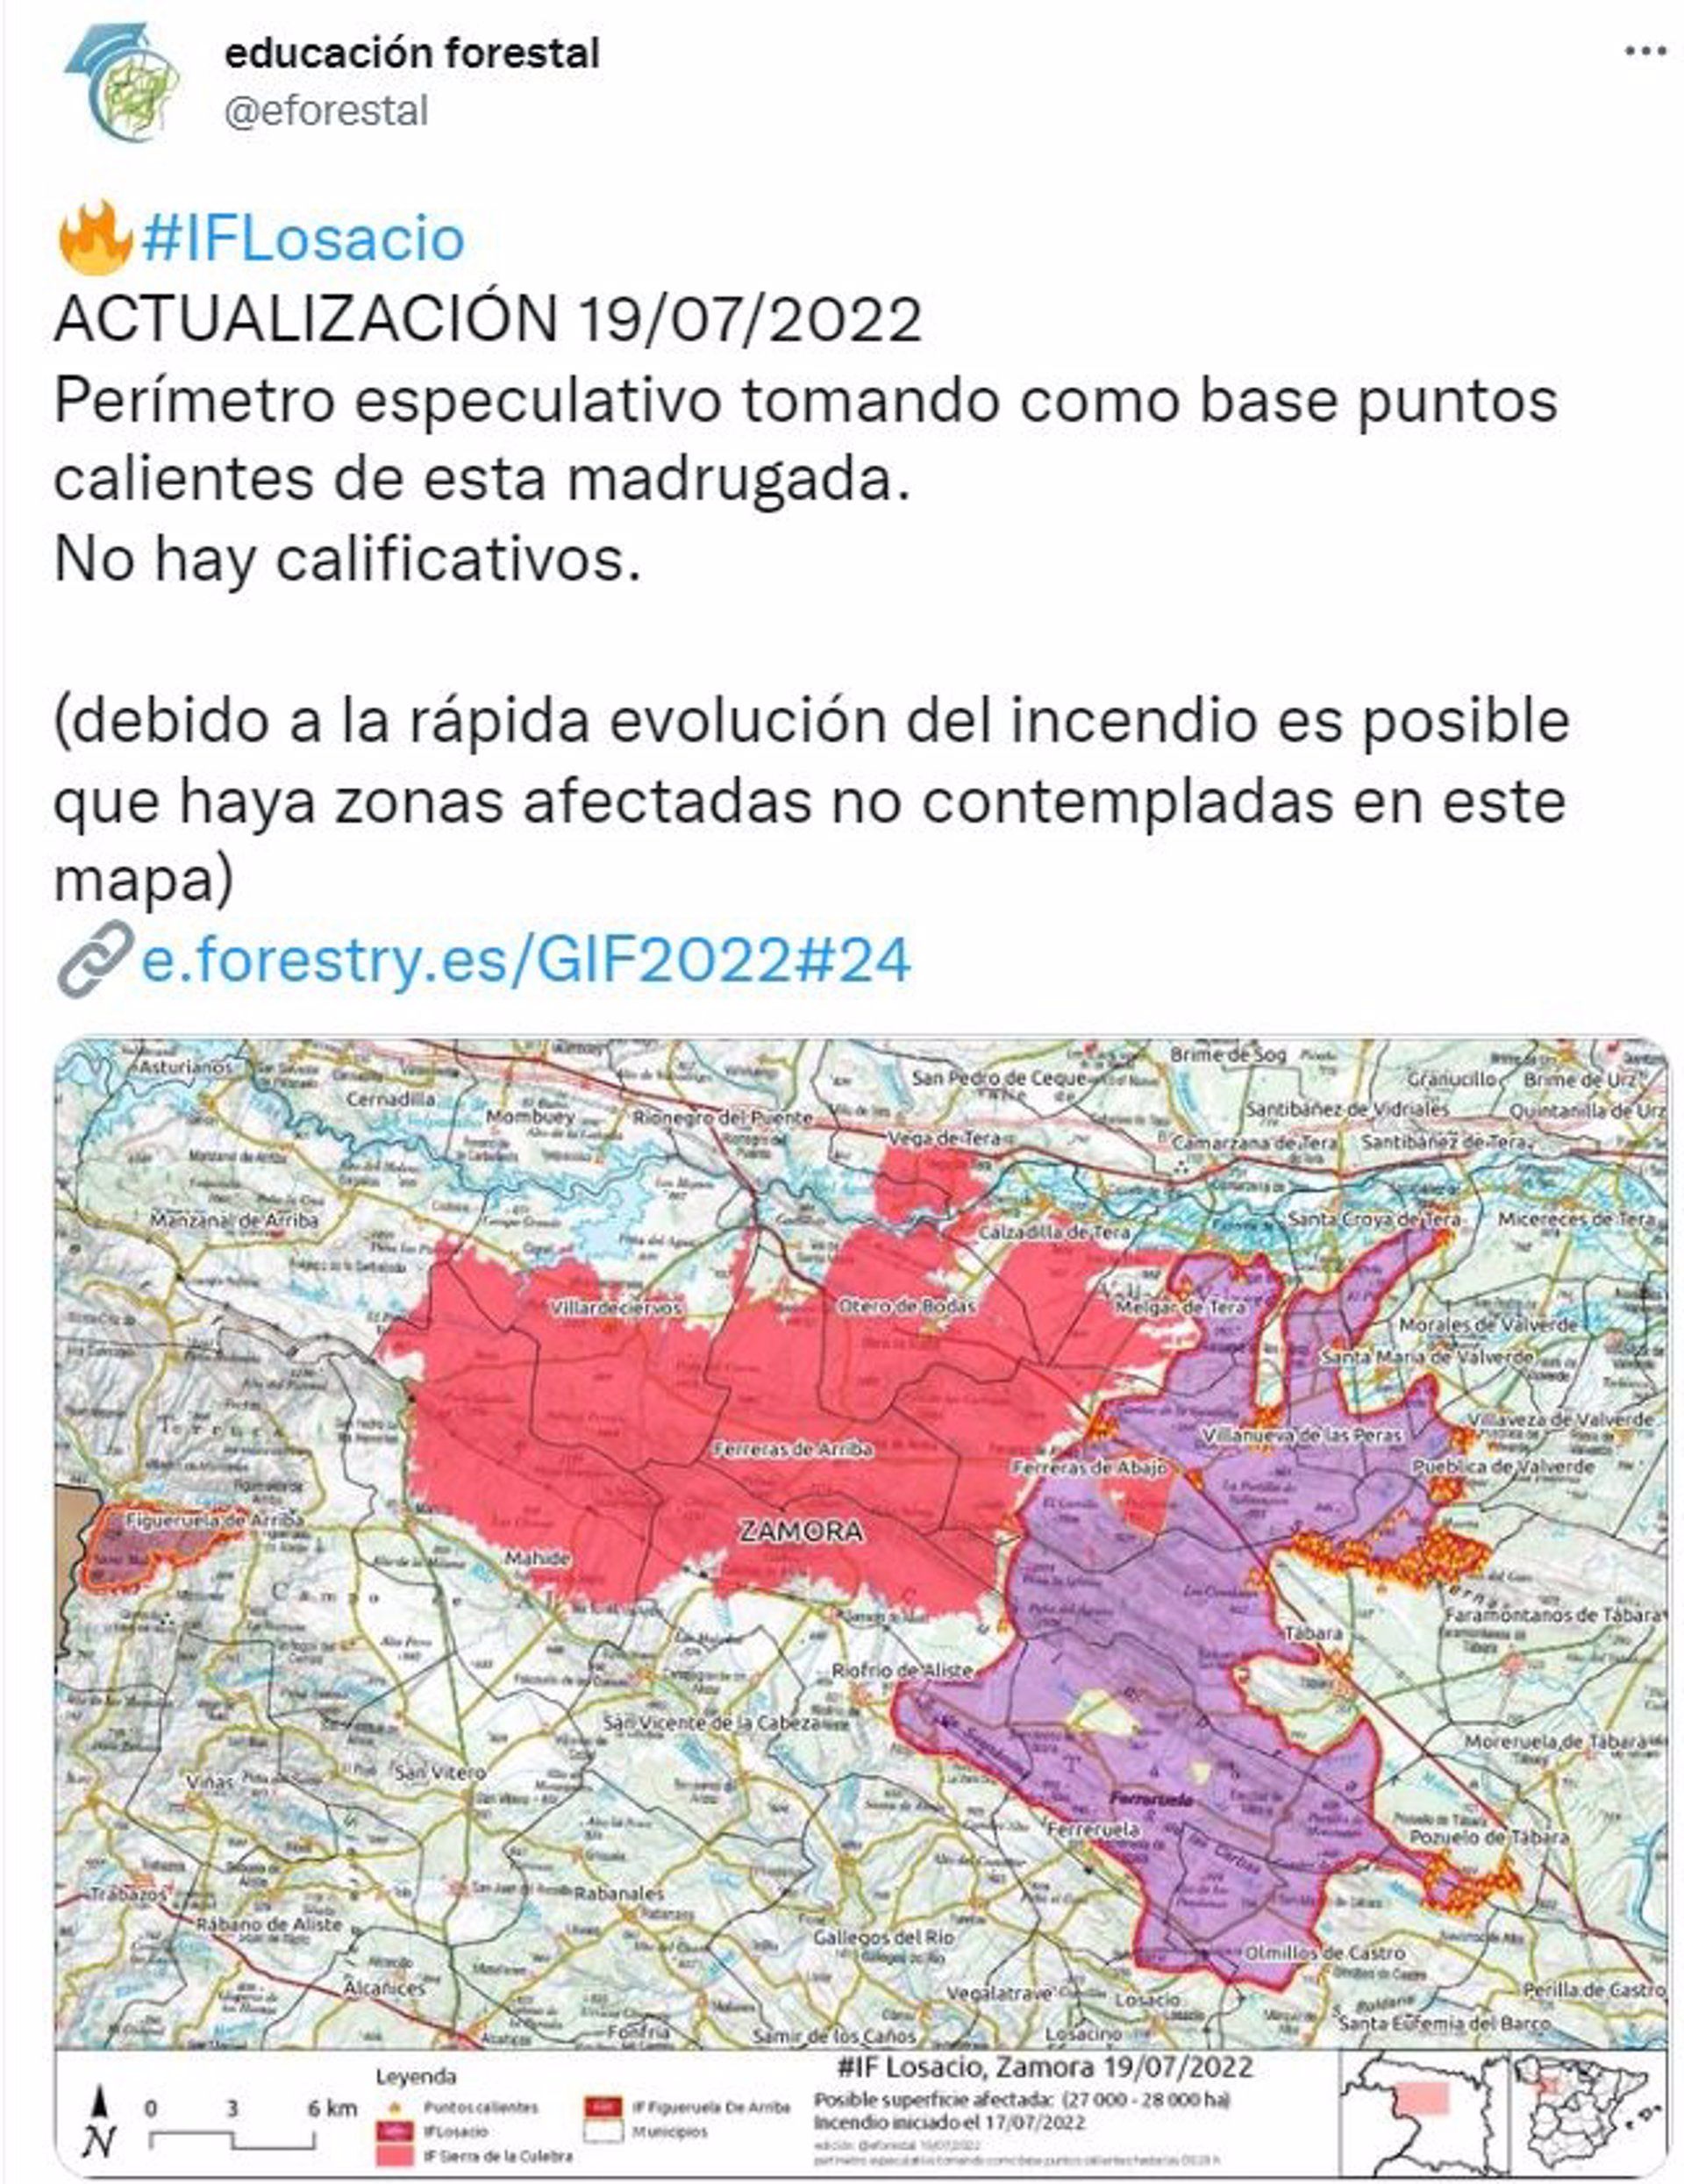 Estimación de superficie afectada en el incendio de Losacio, comparada con los de la Sierra de la Culebra del mes de junio. - @EFORESTAL